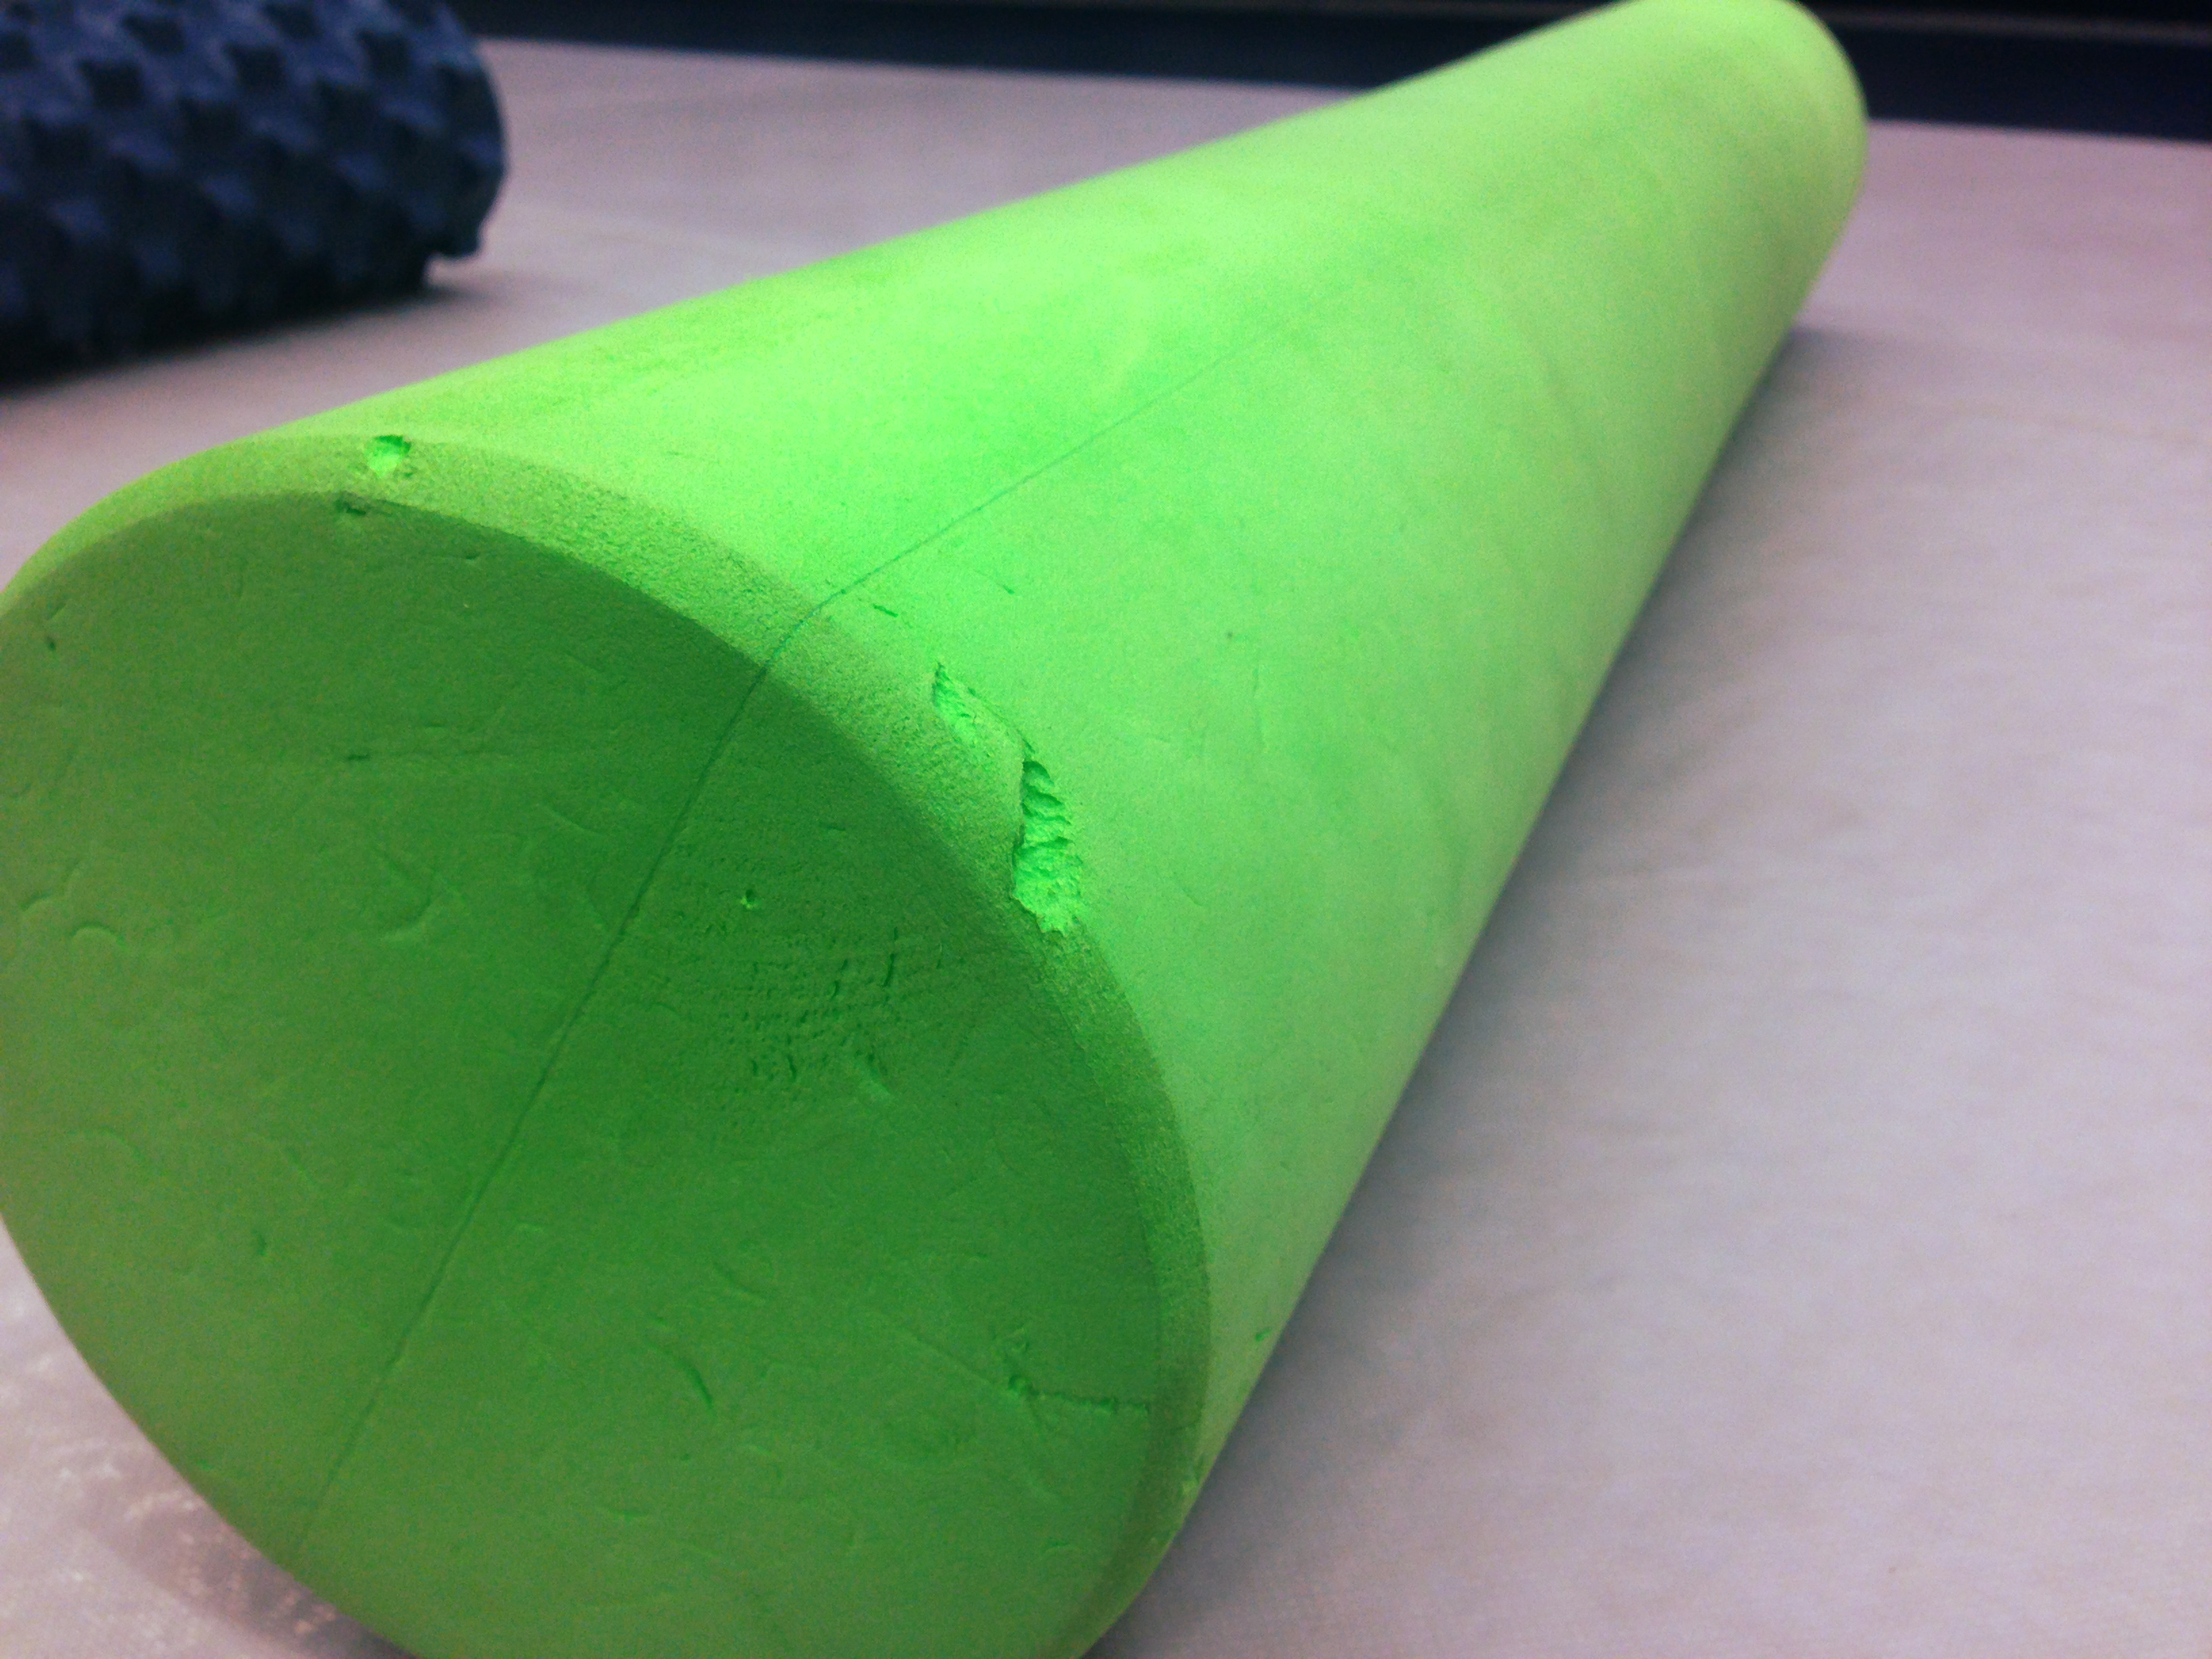 reebok foam roller green